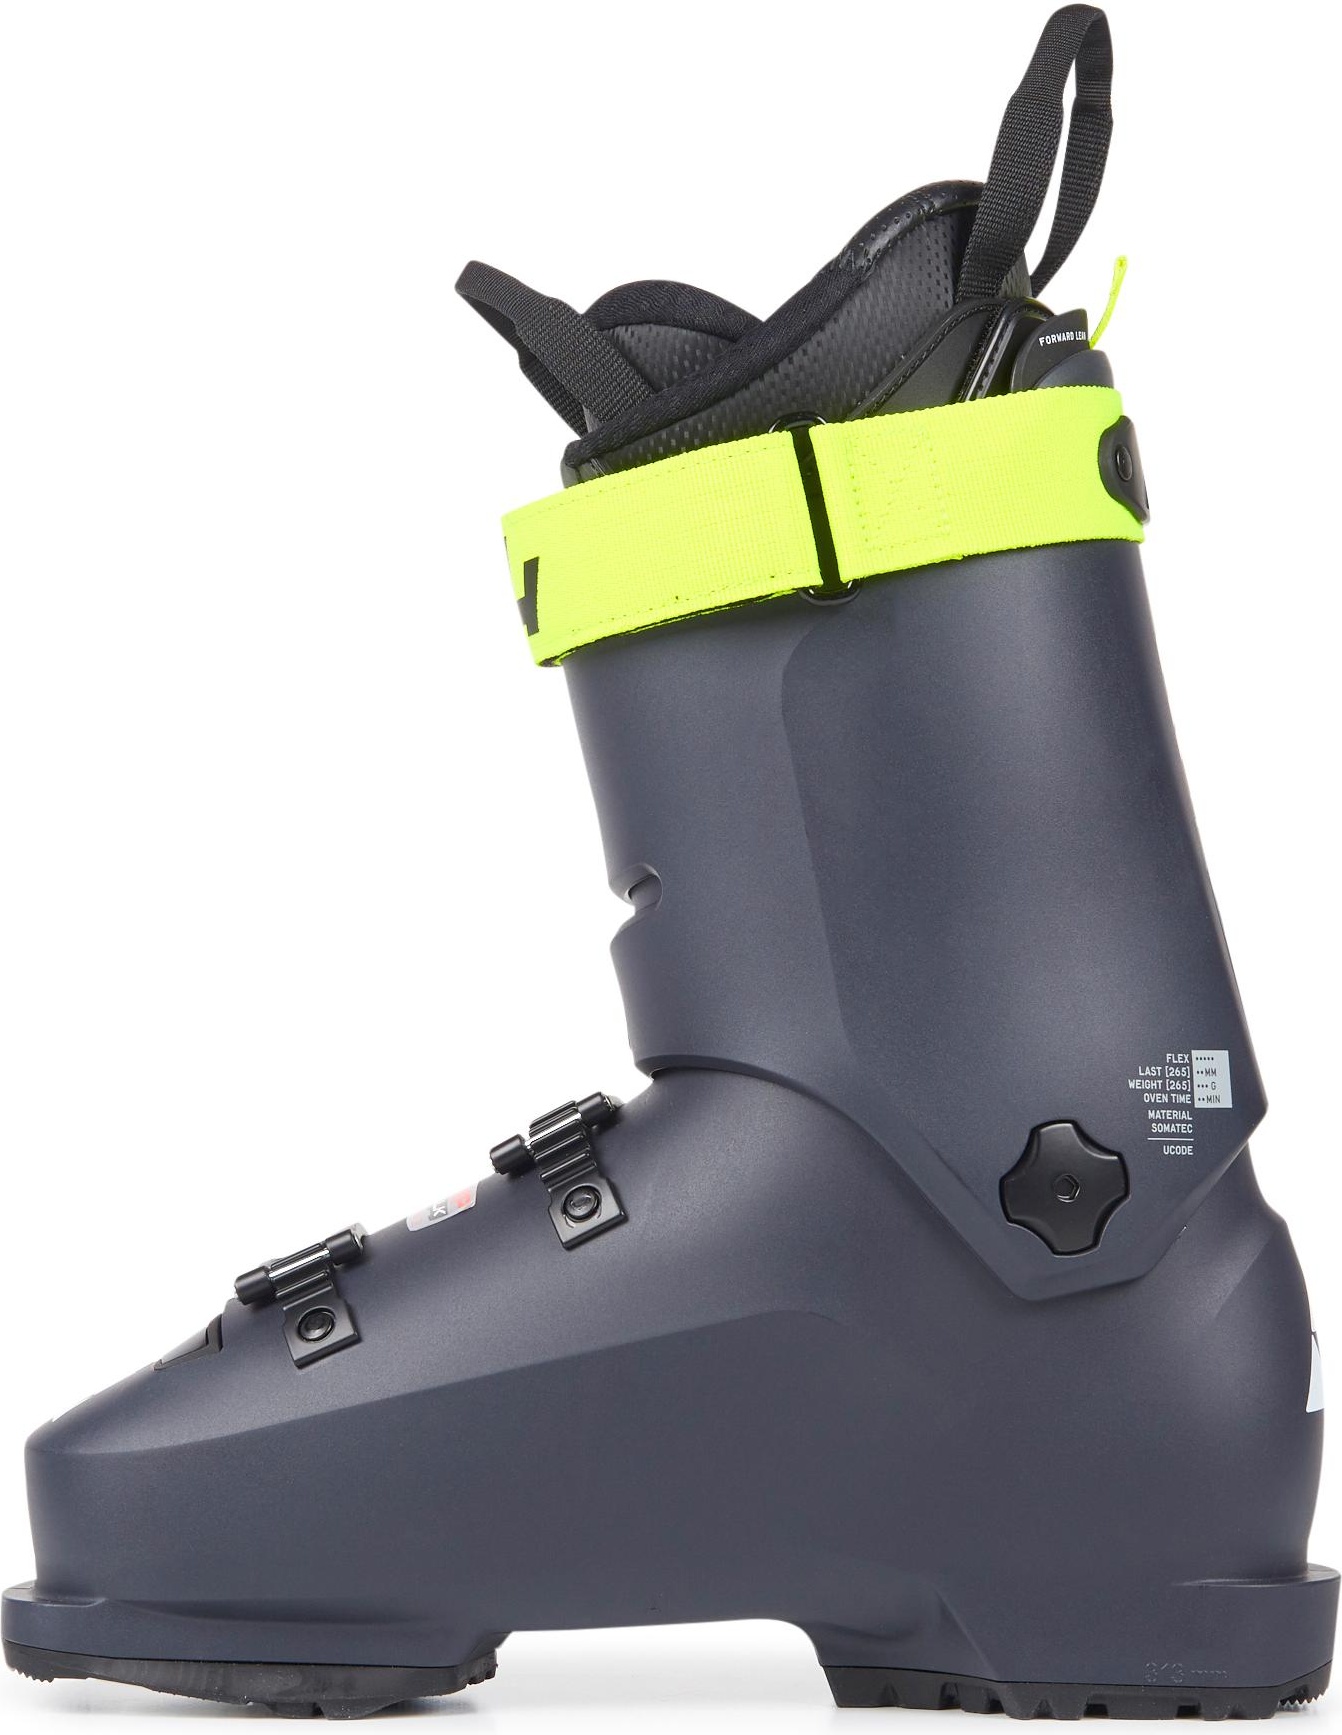 Горнолыжные ботинки Fischer Rc4 The Curv Gt 110 Vacuum Walk 2021, darkgrey/darkgrey, 29.5